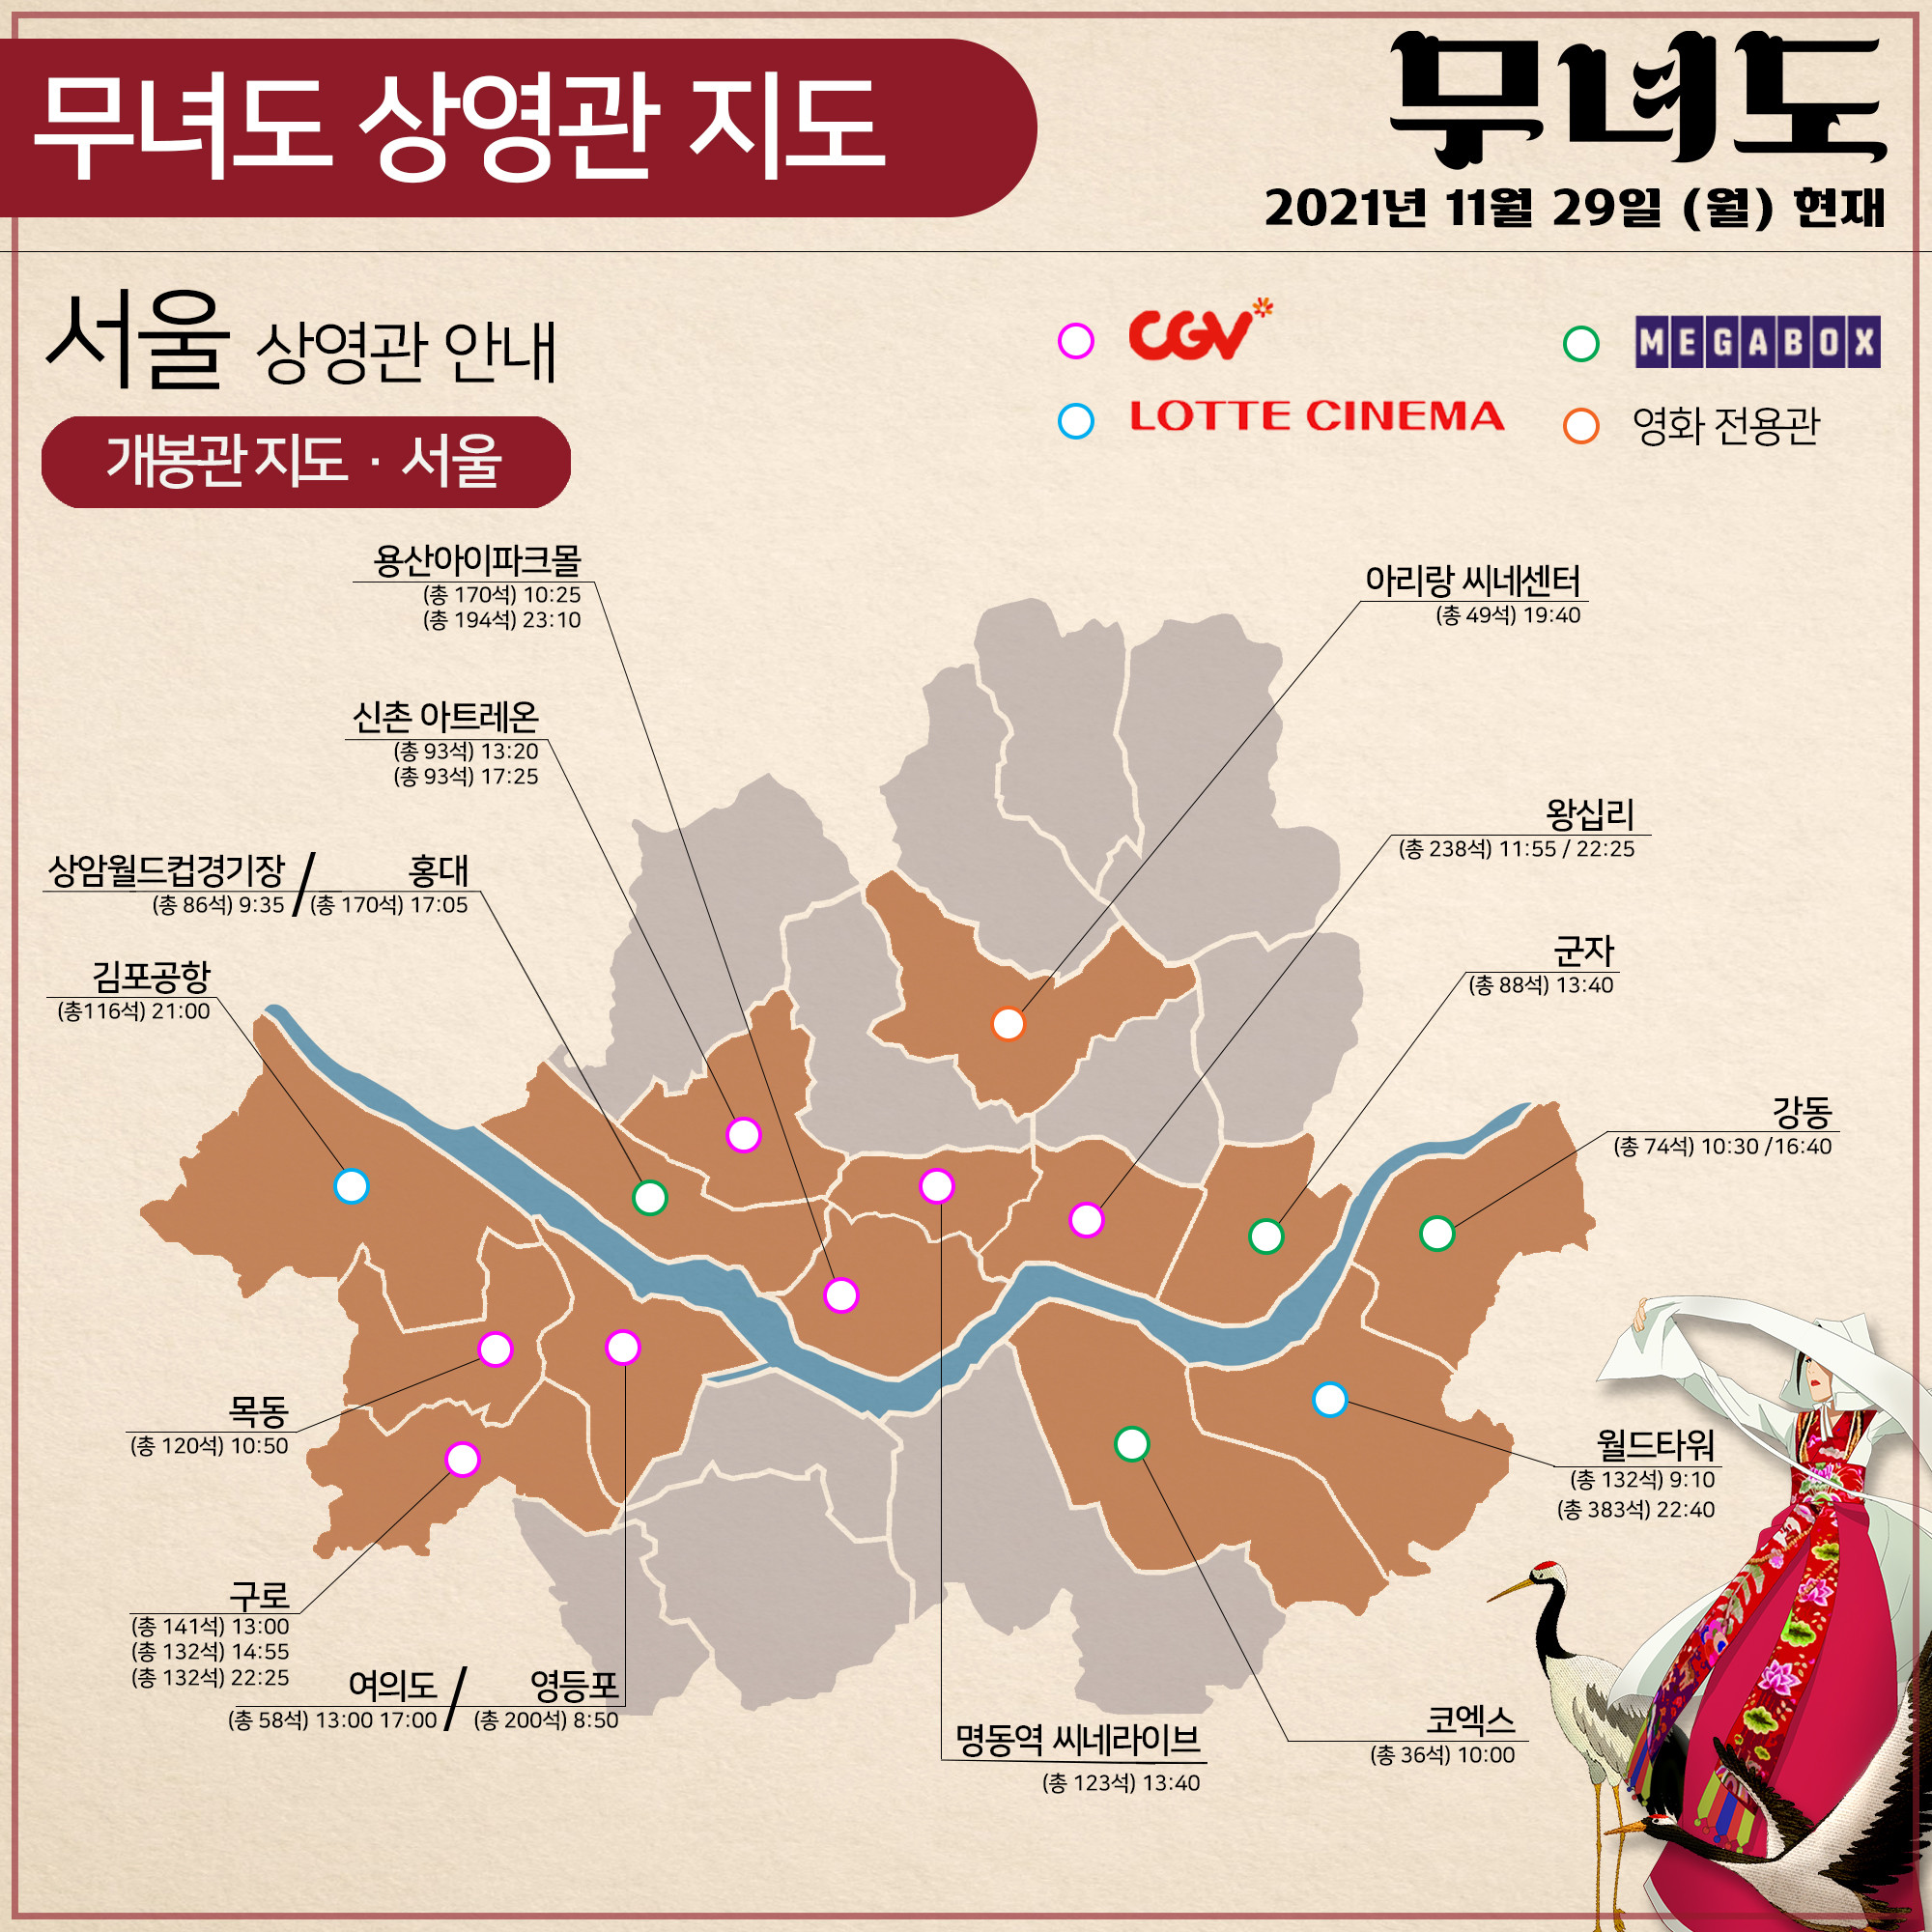 저용량_상영관안내_지도_서울 29일.jpg